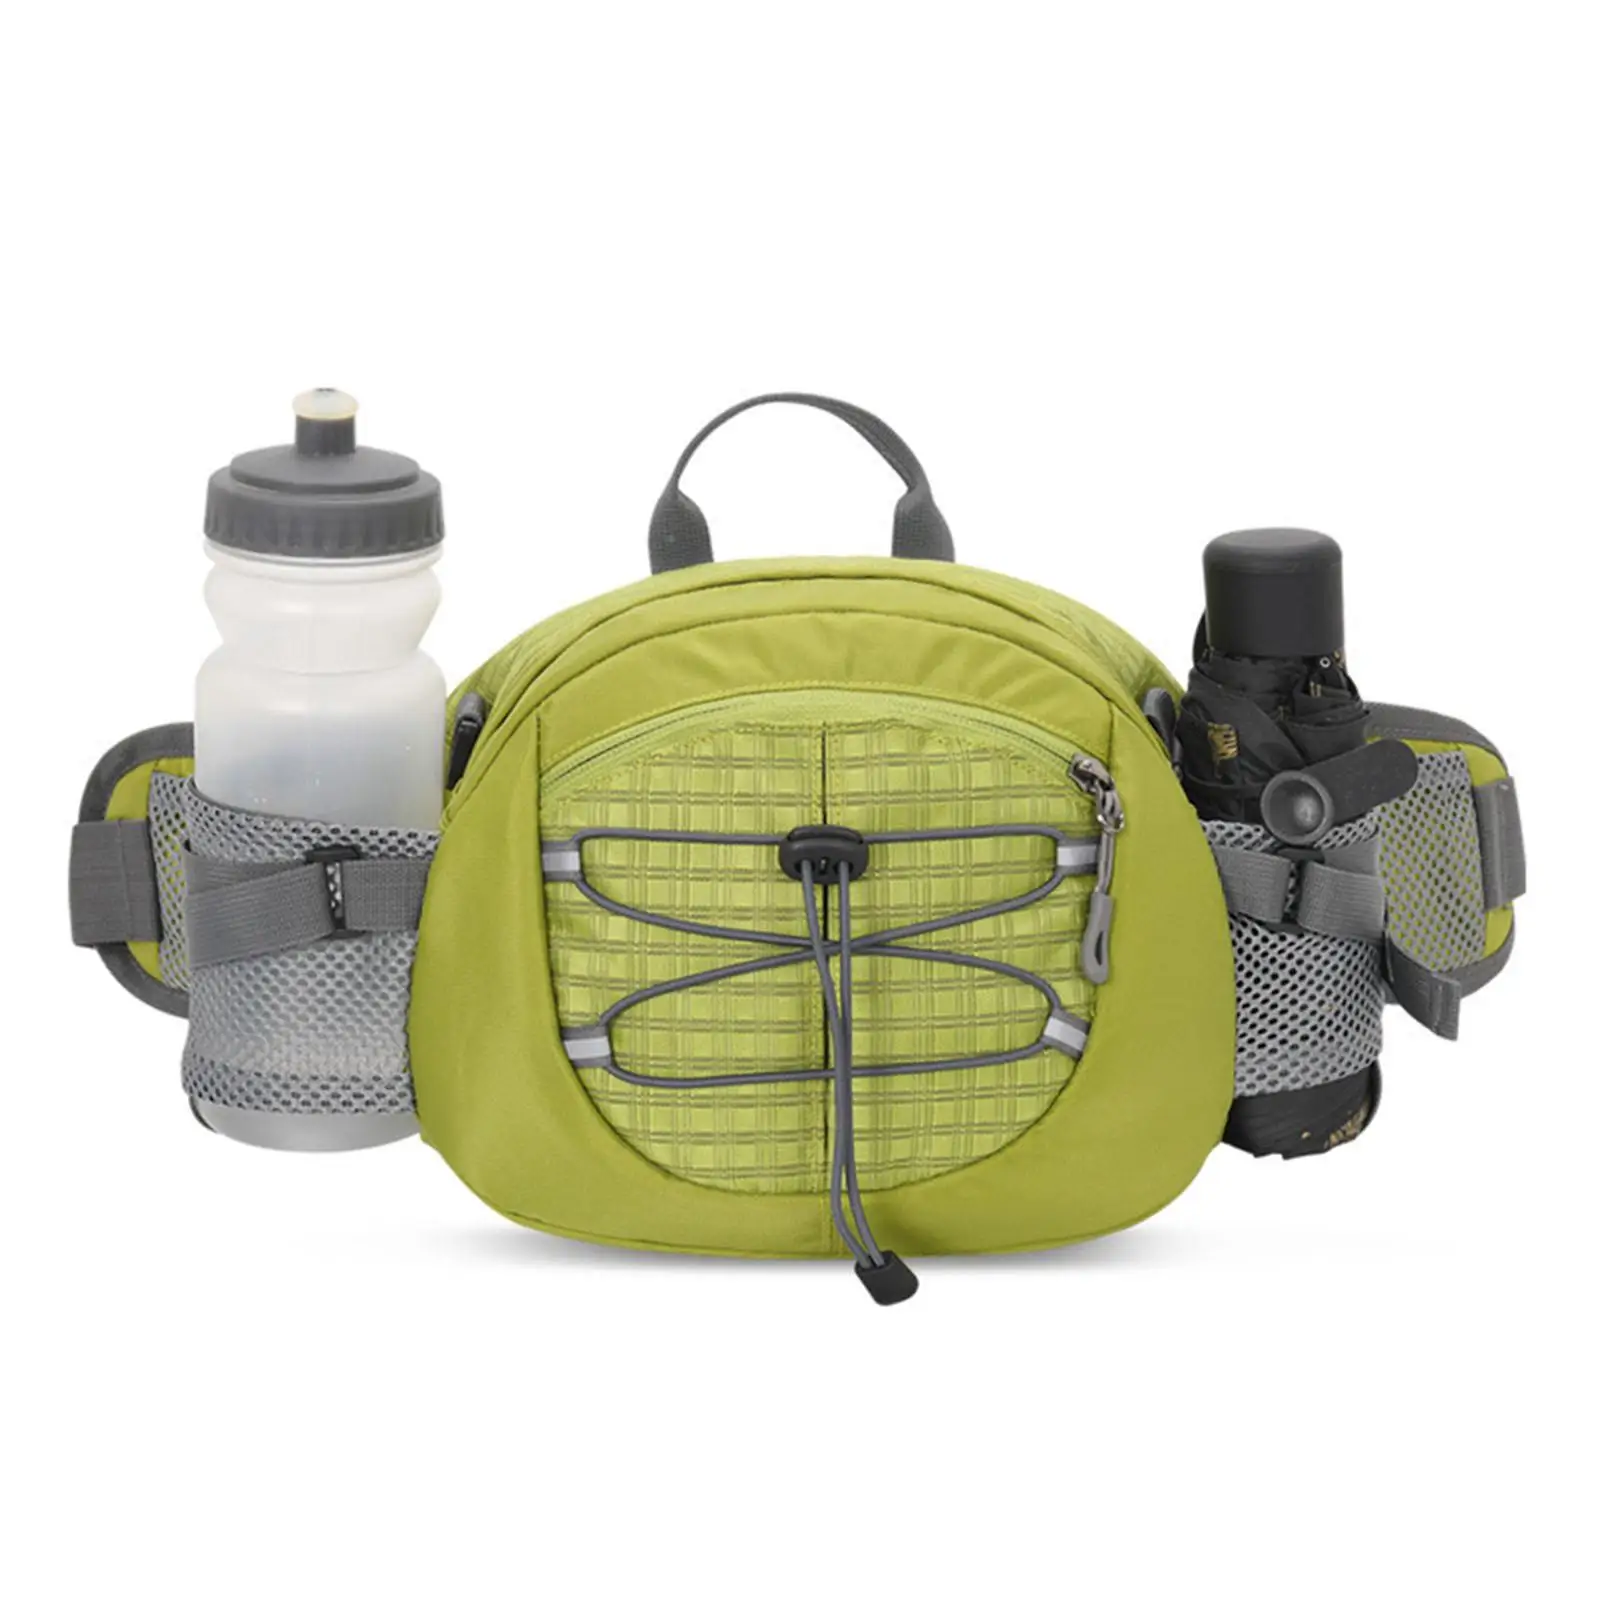 Waist Bag Pack Fanny Pack Adjustable Belt Travel Shoulder Bag Men Women Hip Bag for Hiking Sports Walking Cycling Climbing